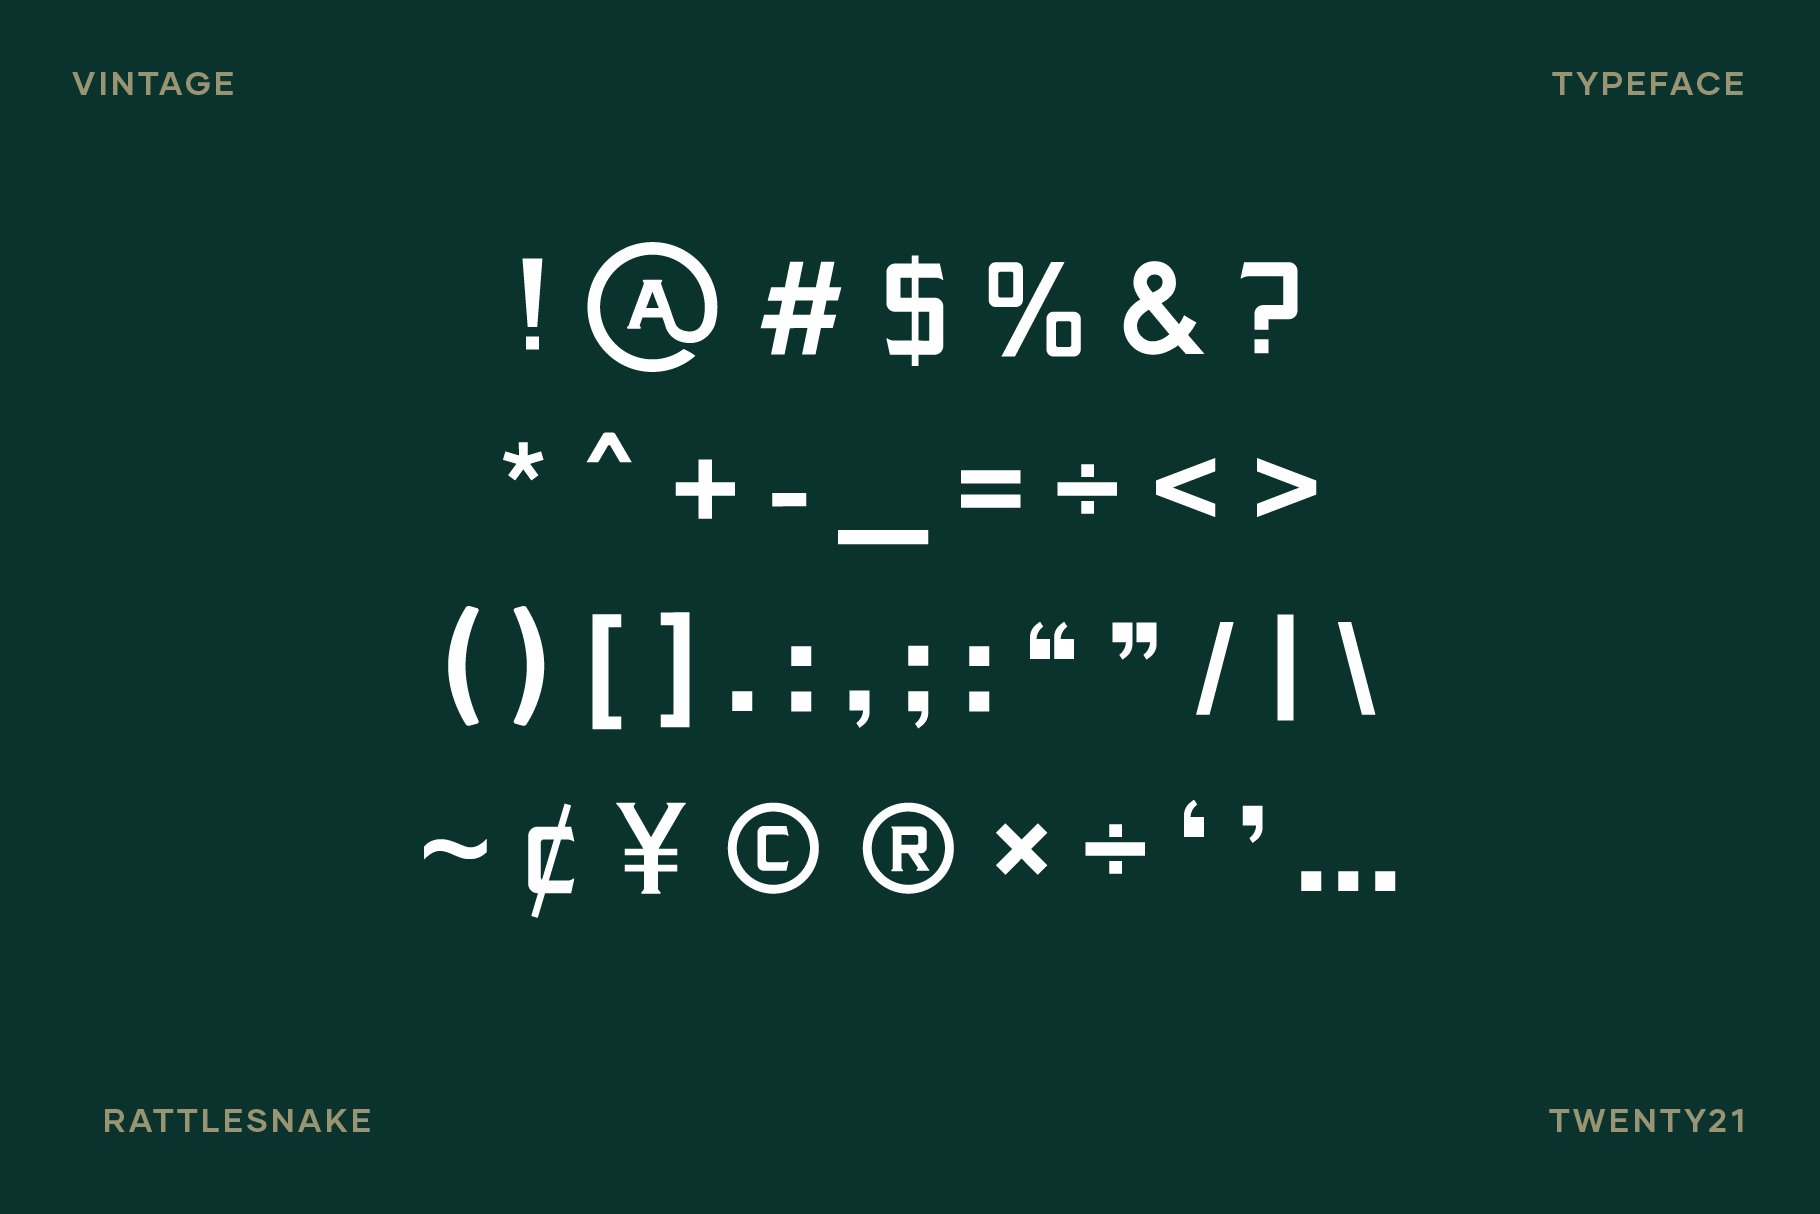 Rattlesnake - Vintage Display Font